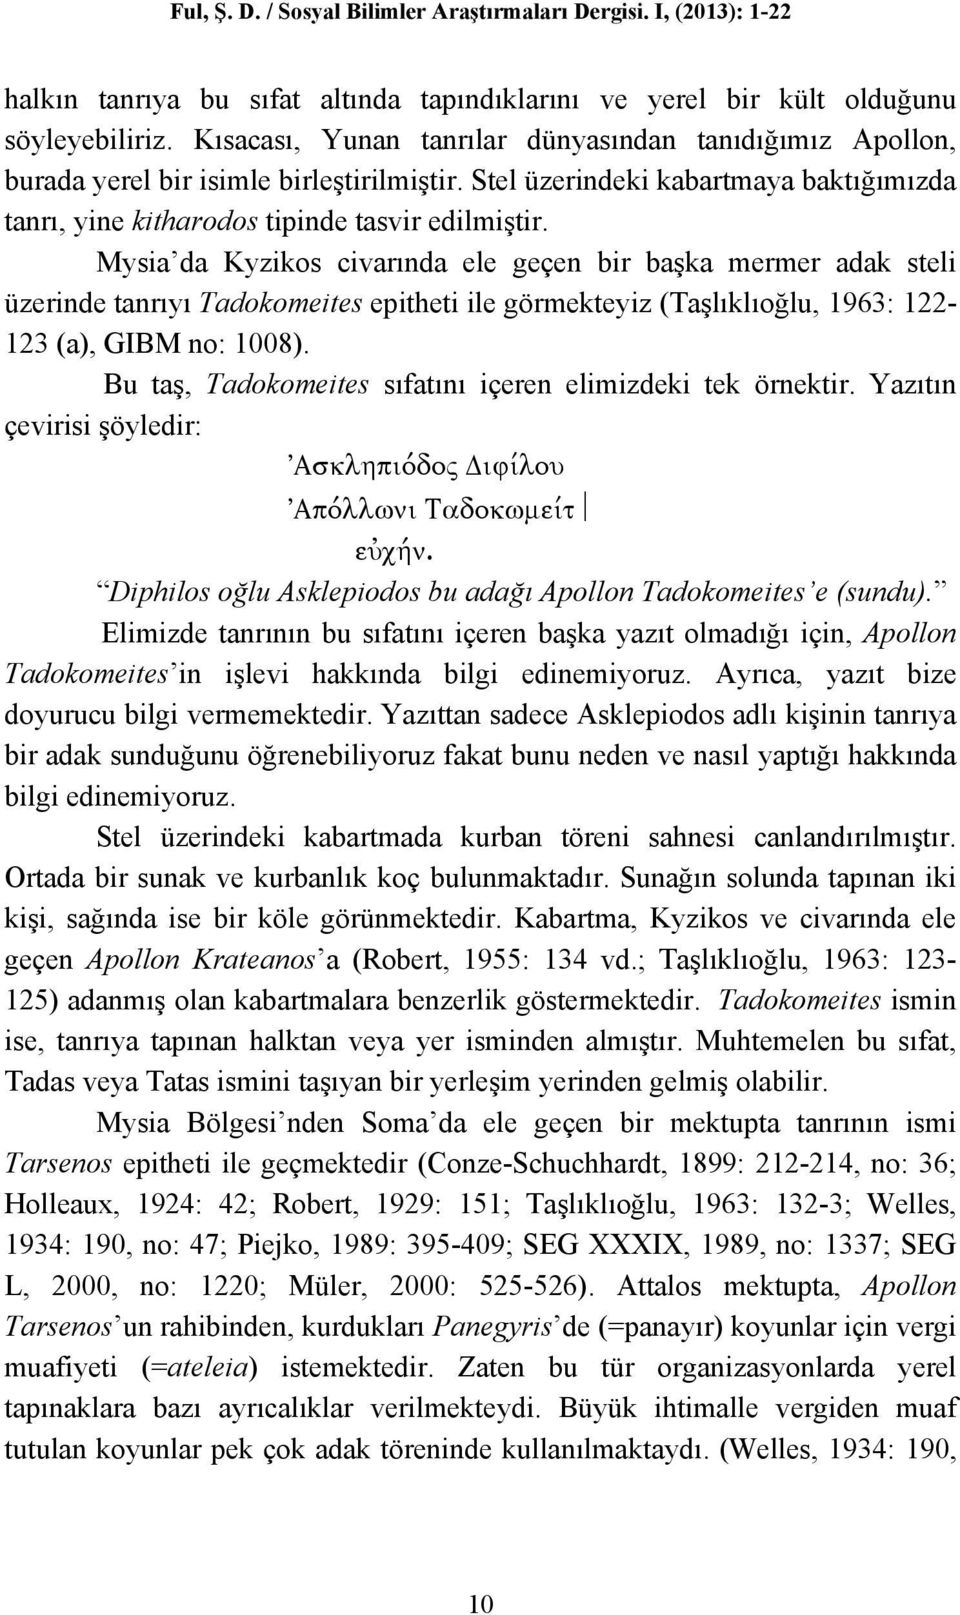 Mysia da Kyzikos civarında ele geçen bir başka mermer adak steli üzerinde tanrıyı Tadokomeites epitheti ile görmekteyiz (Taşlıklıoğlu, 1963: 122-123 (a), GIBM no: 1008).